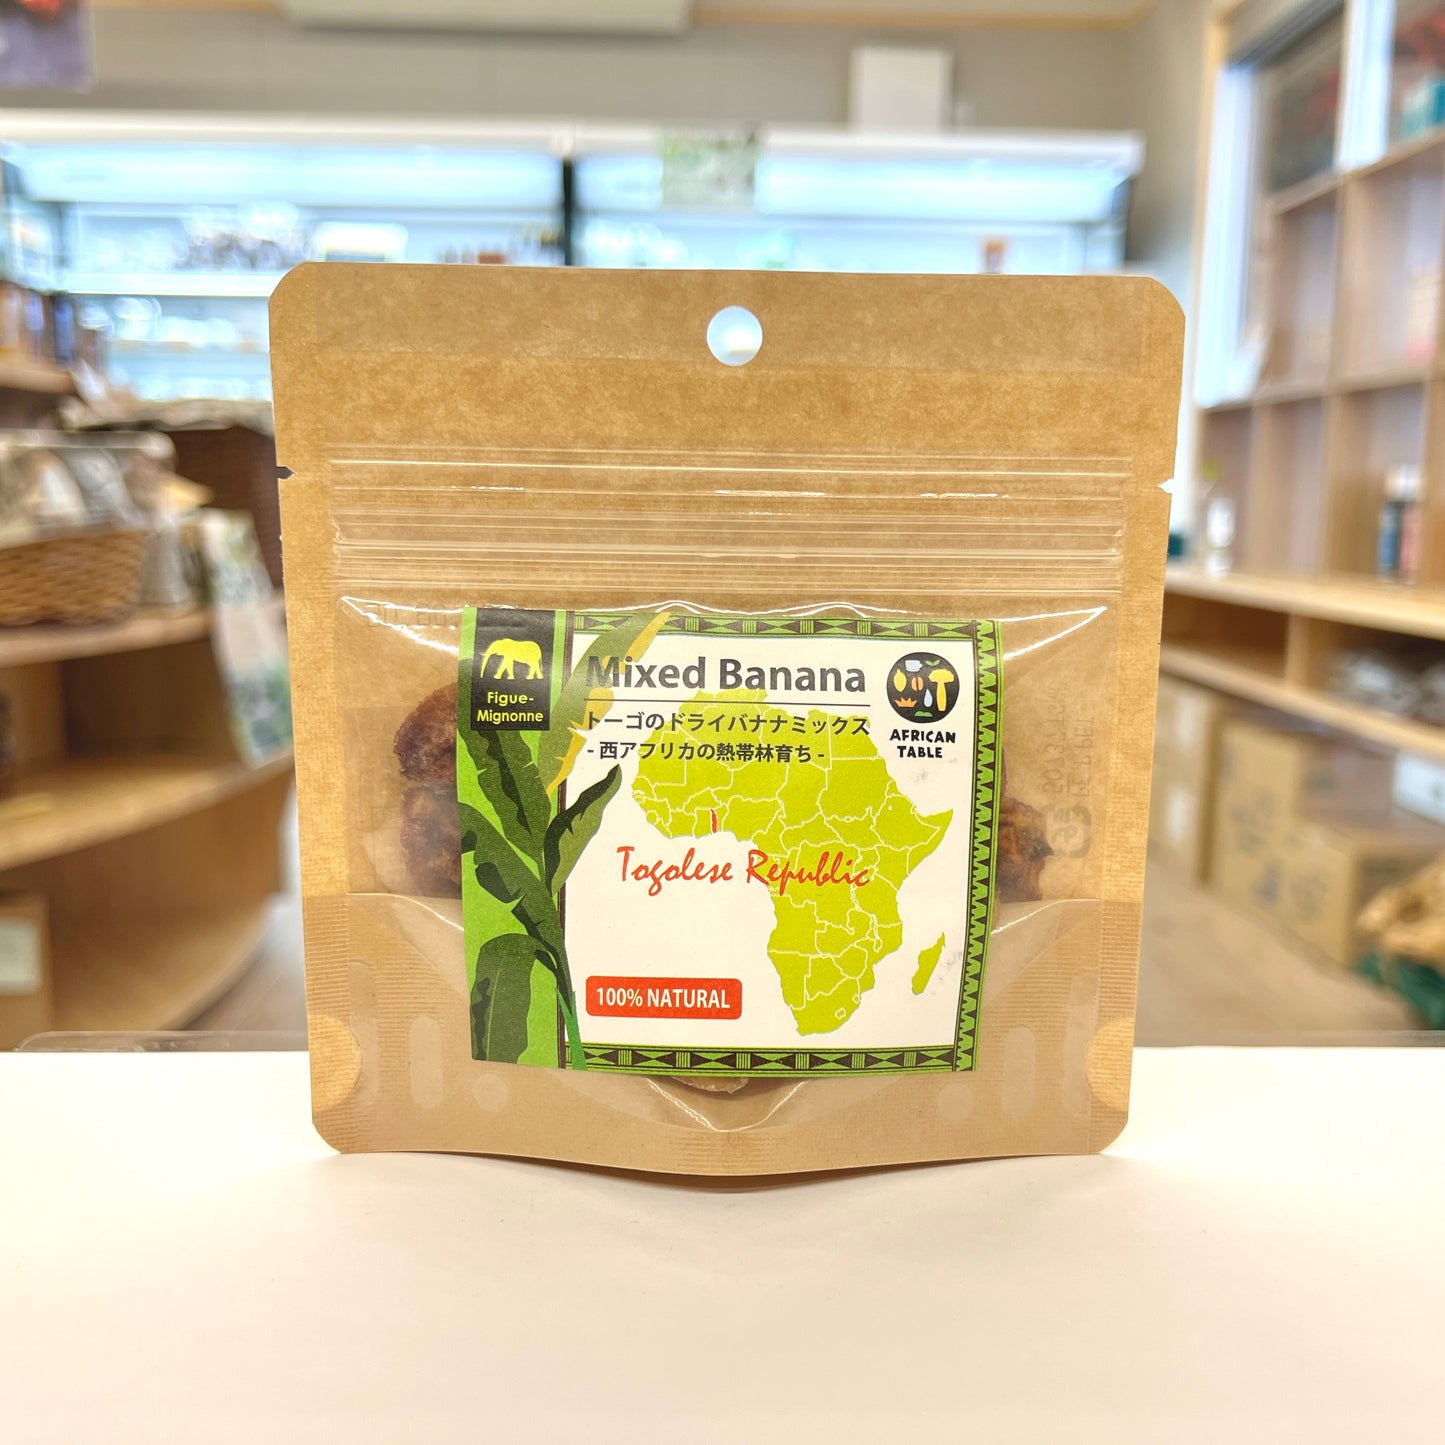 アフリカンテーブル 西アフリカ/トーゴ産のドライバナナミックス 45g